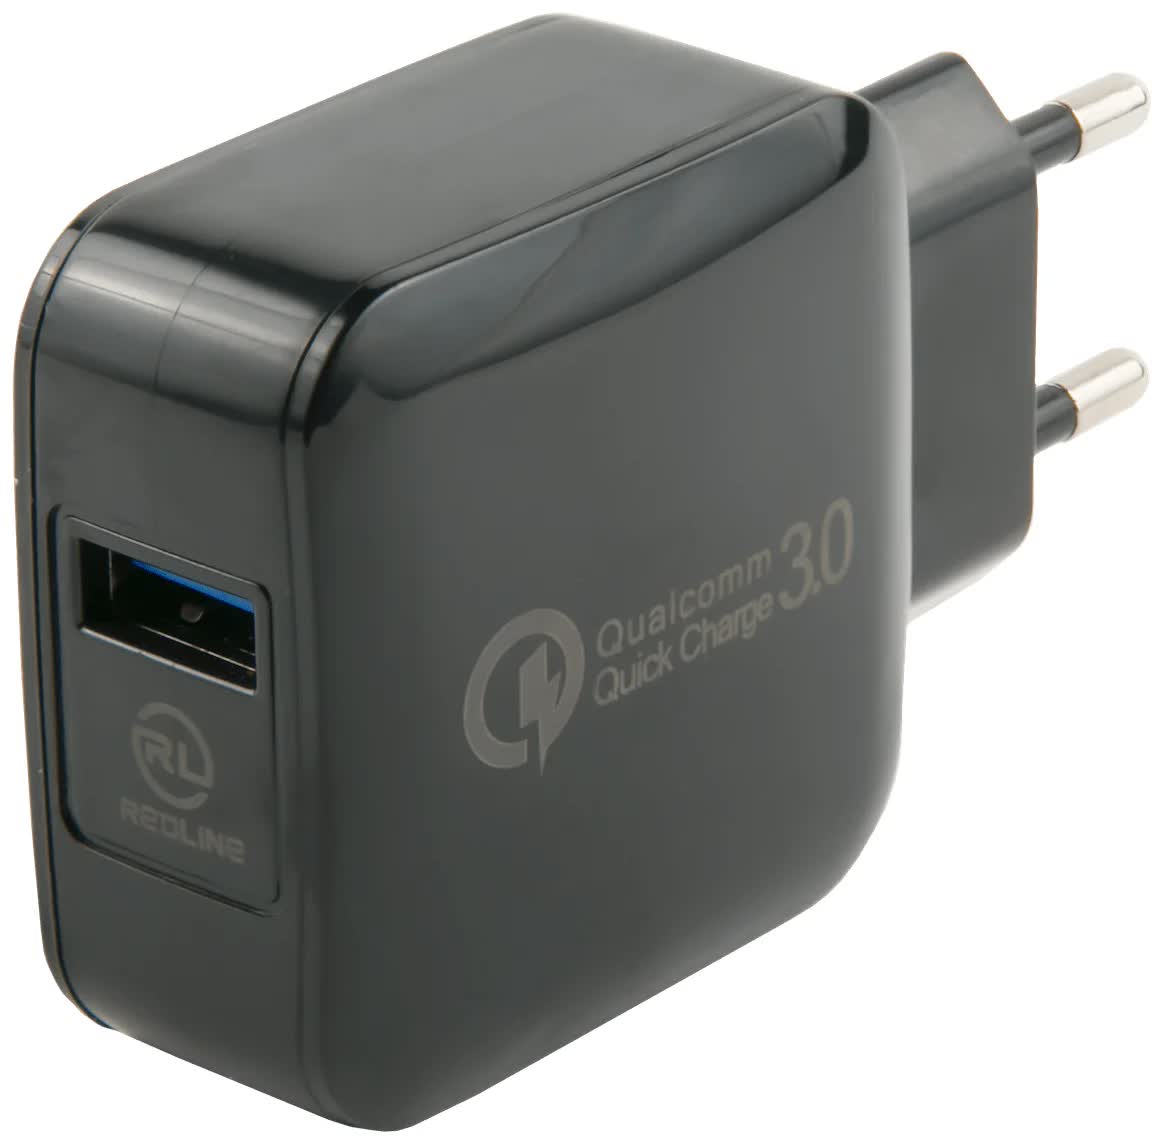 Сетевое зарядное устройство Red Line Tech USB QC 3.0 (модель NQC-4), черный УТ000016520 usb порт для зарядки док станция с гибким кабелем для meizu 15 m15 plus usb штепсельная плата зарядного устройства с микрофоном